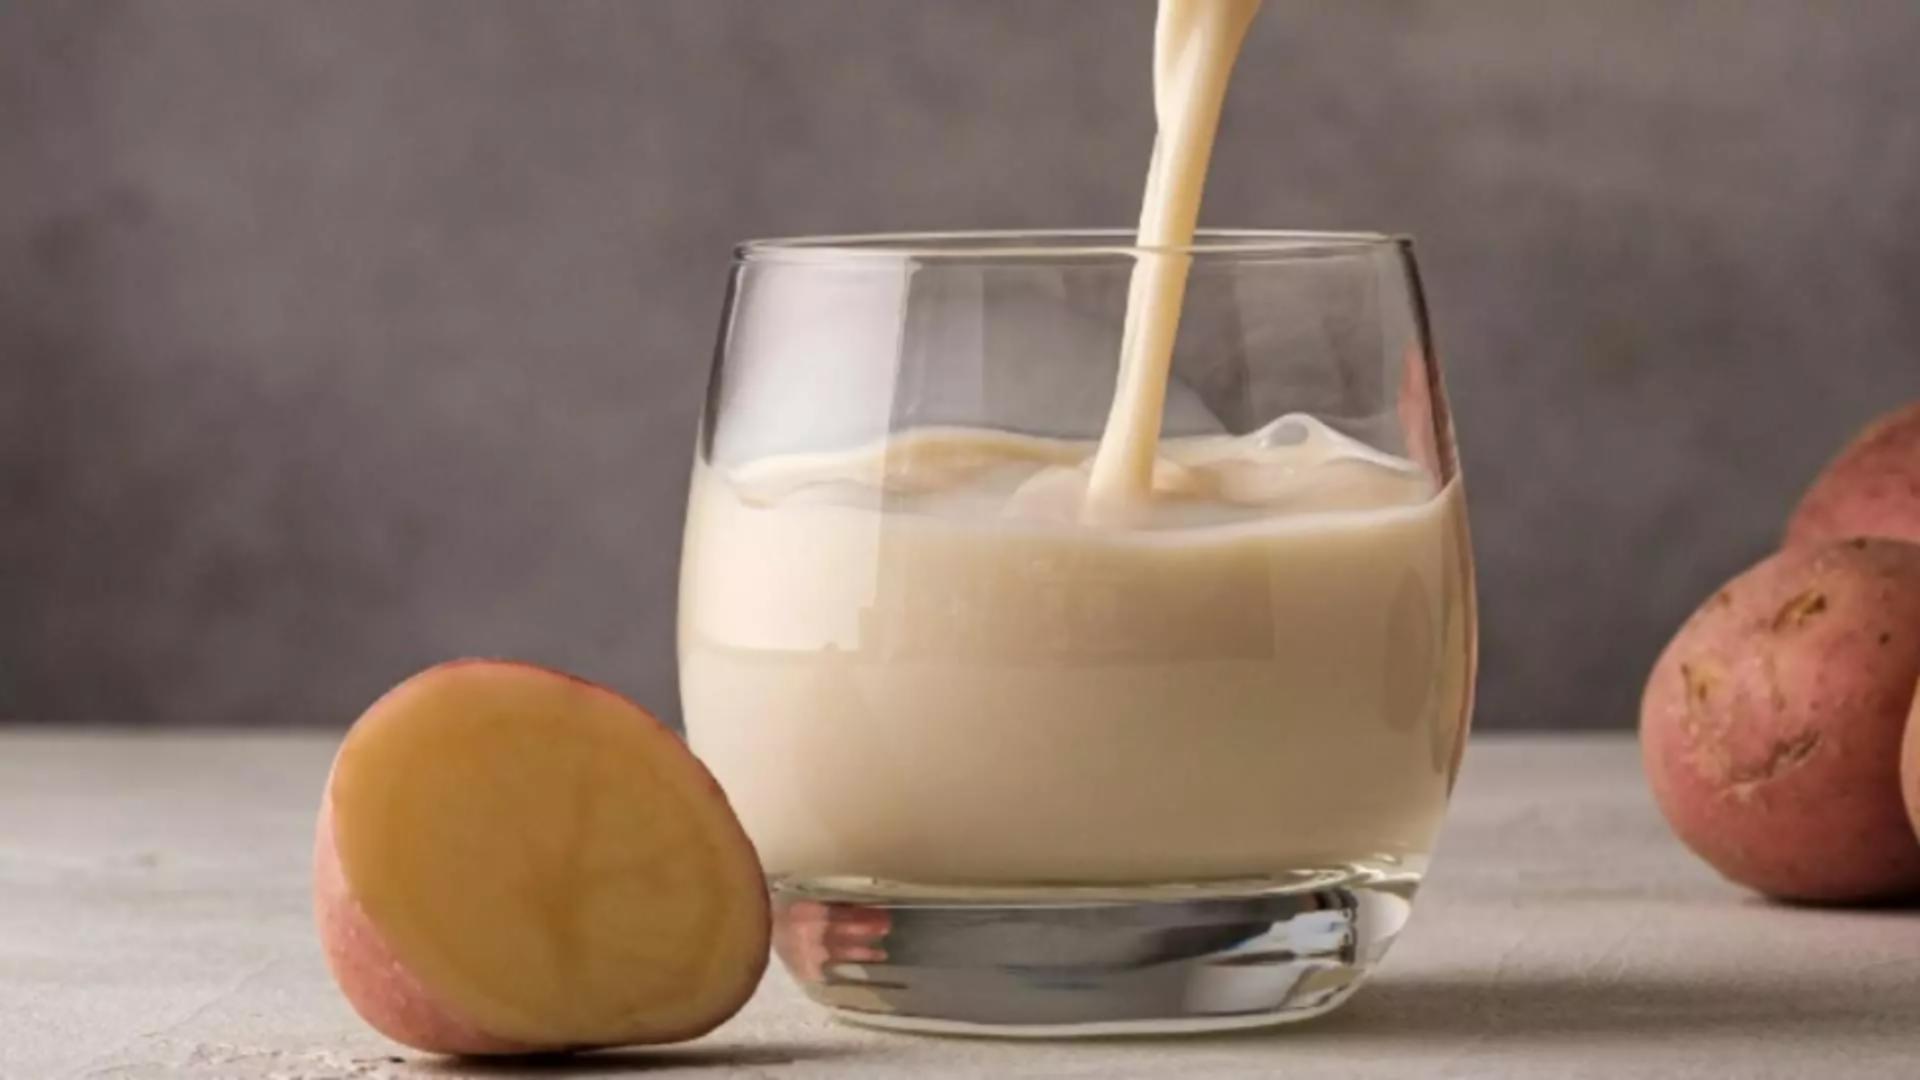 Laptele de cartof, salvare pentru diabetici: beneficii nebănuite pentru sănătate. Cum se prepară